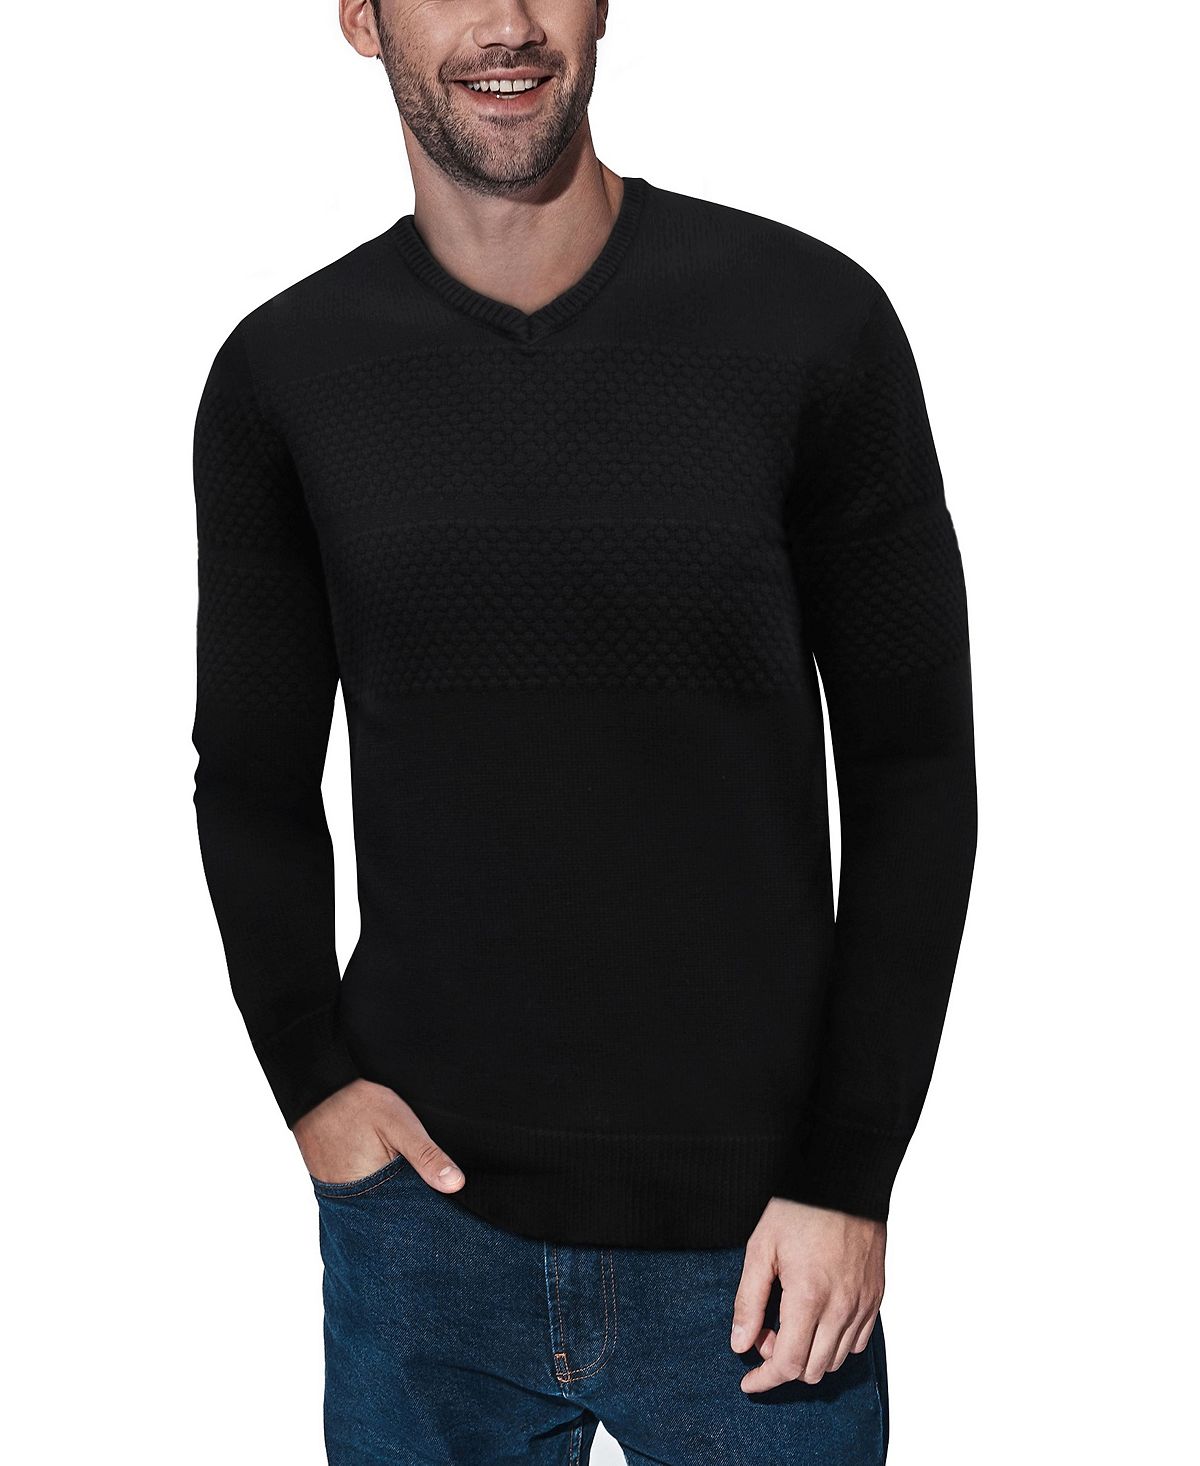 Мужской свитер сотовой вязки с v-образным вырезом X-Ray, черный женский пуловер топ пуловер с леопардовым принтом свитшот осенний женский пуловер с v образным вырезом асимметричный цветной пуловер с л